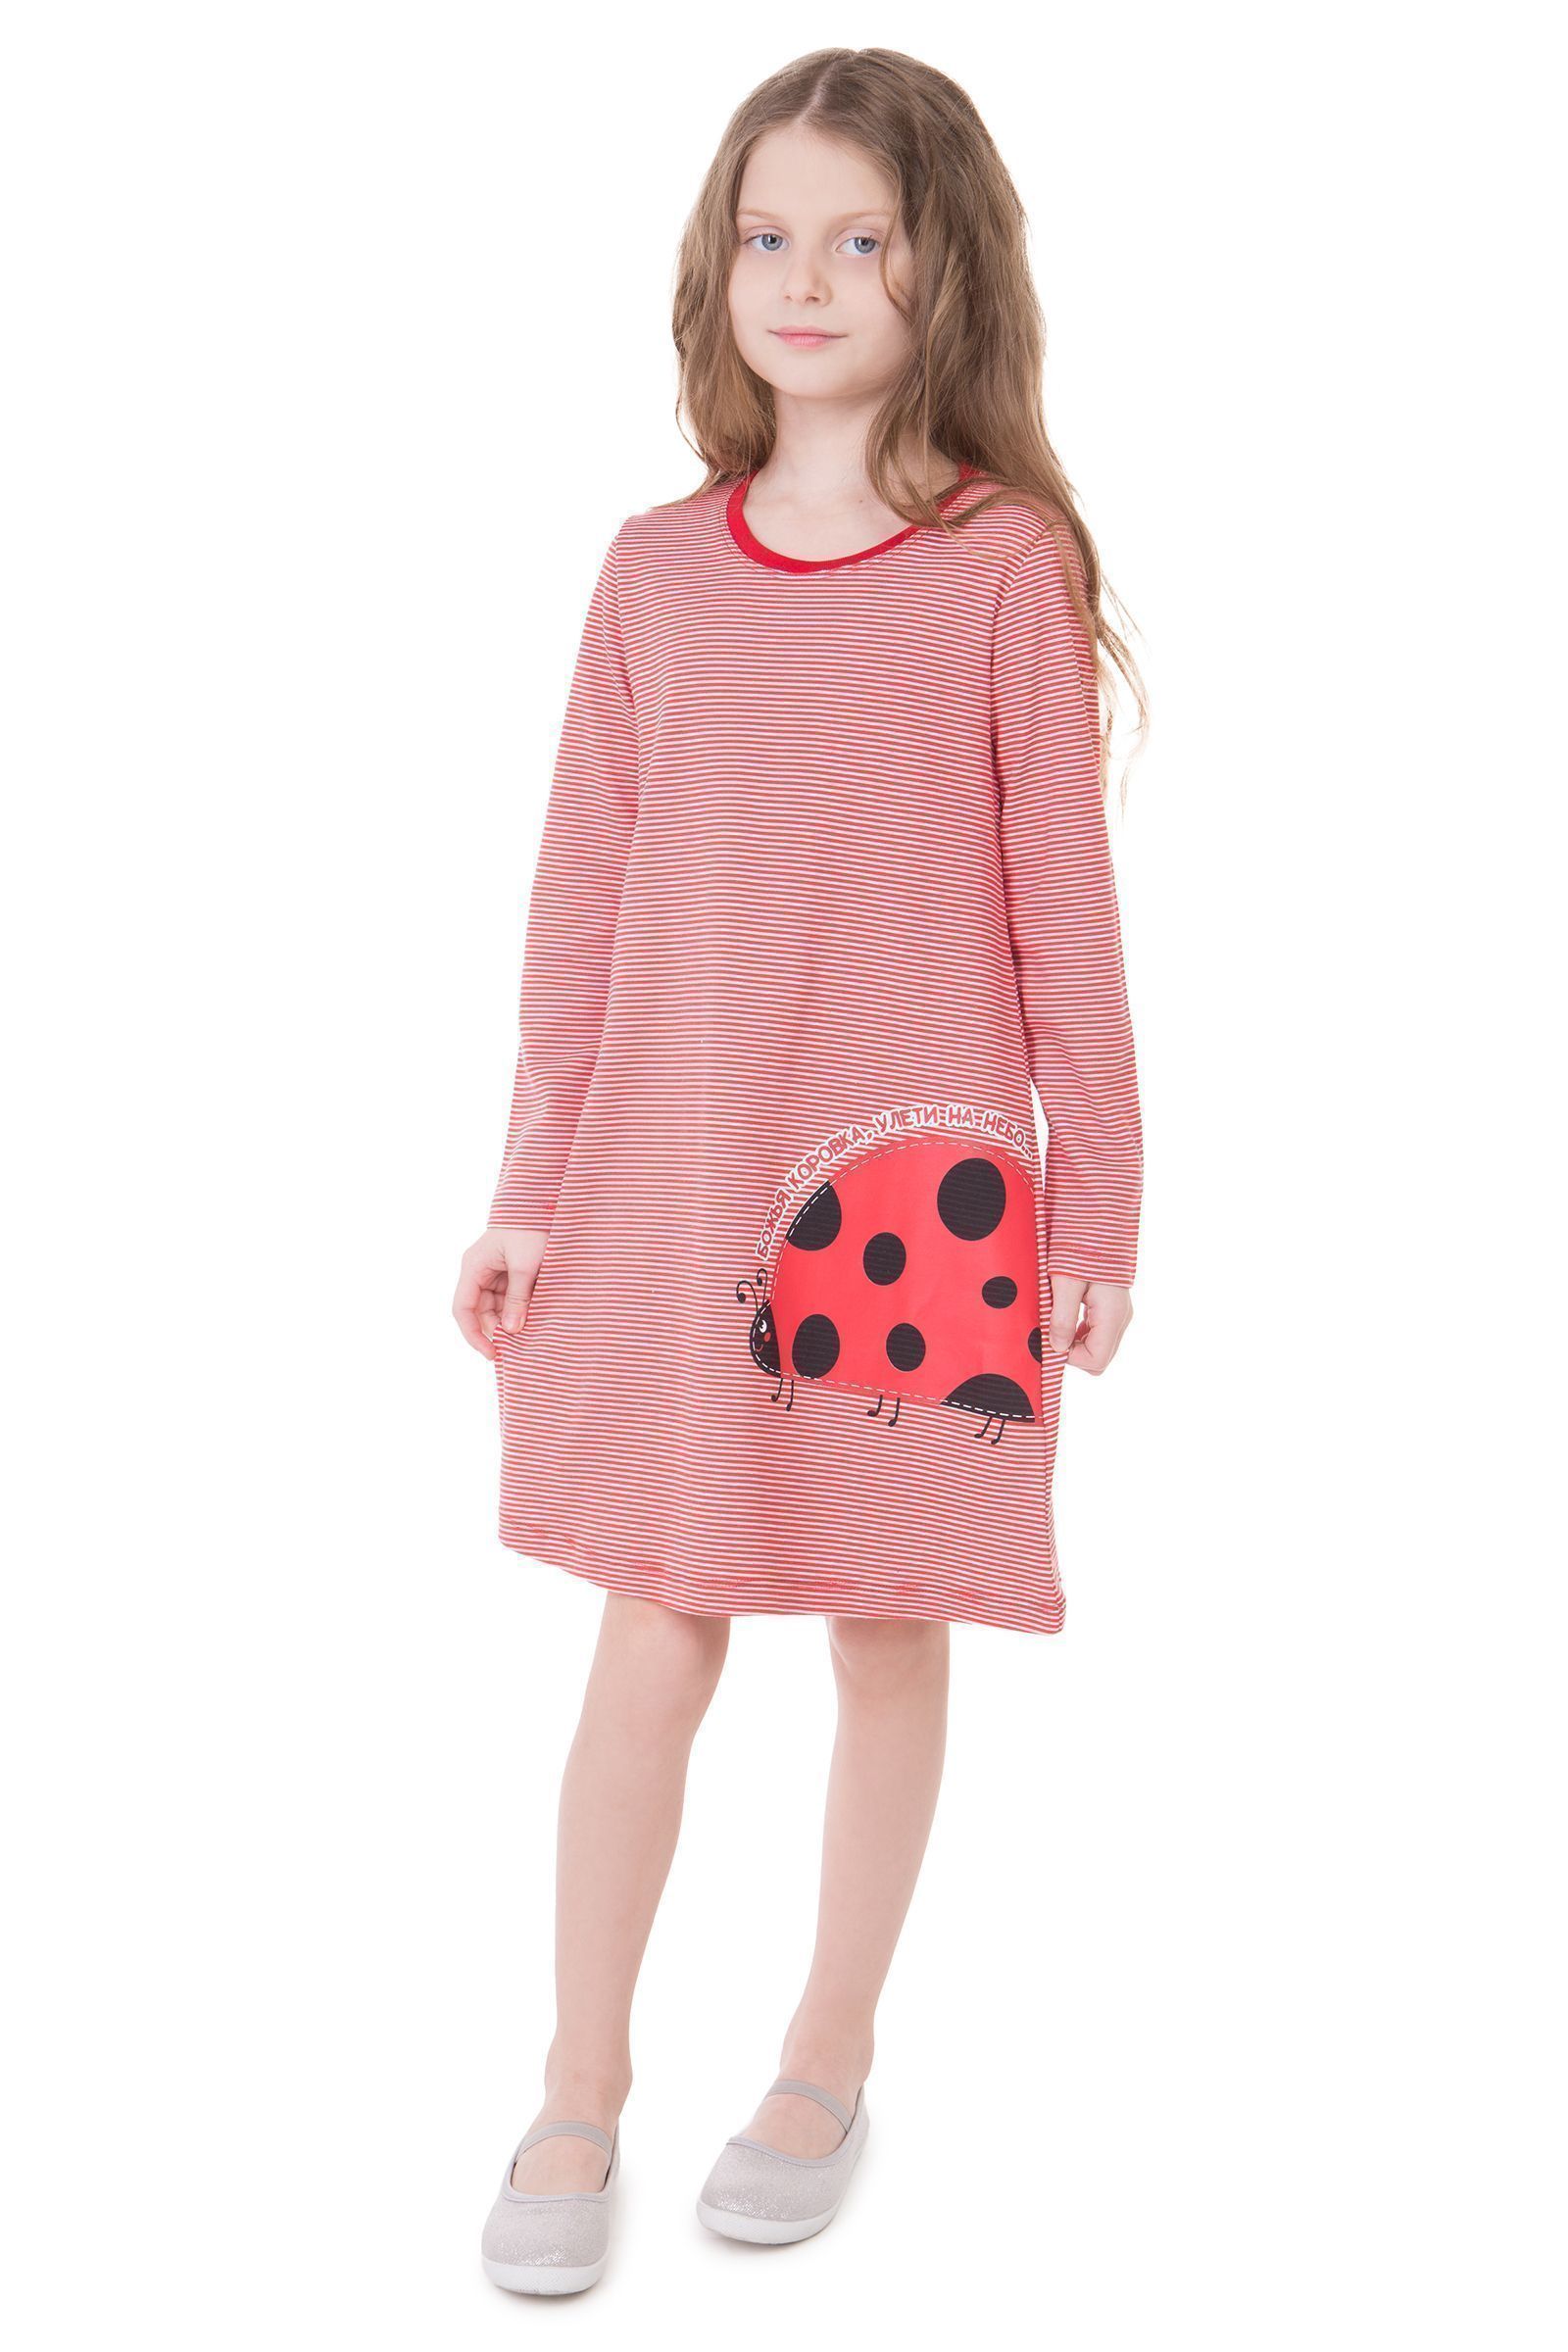 Сорочка-СР01-3860 оптом от производителя детской одежды 'Алёна'